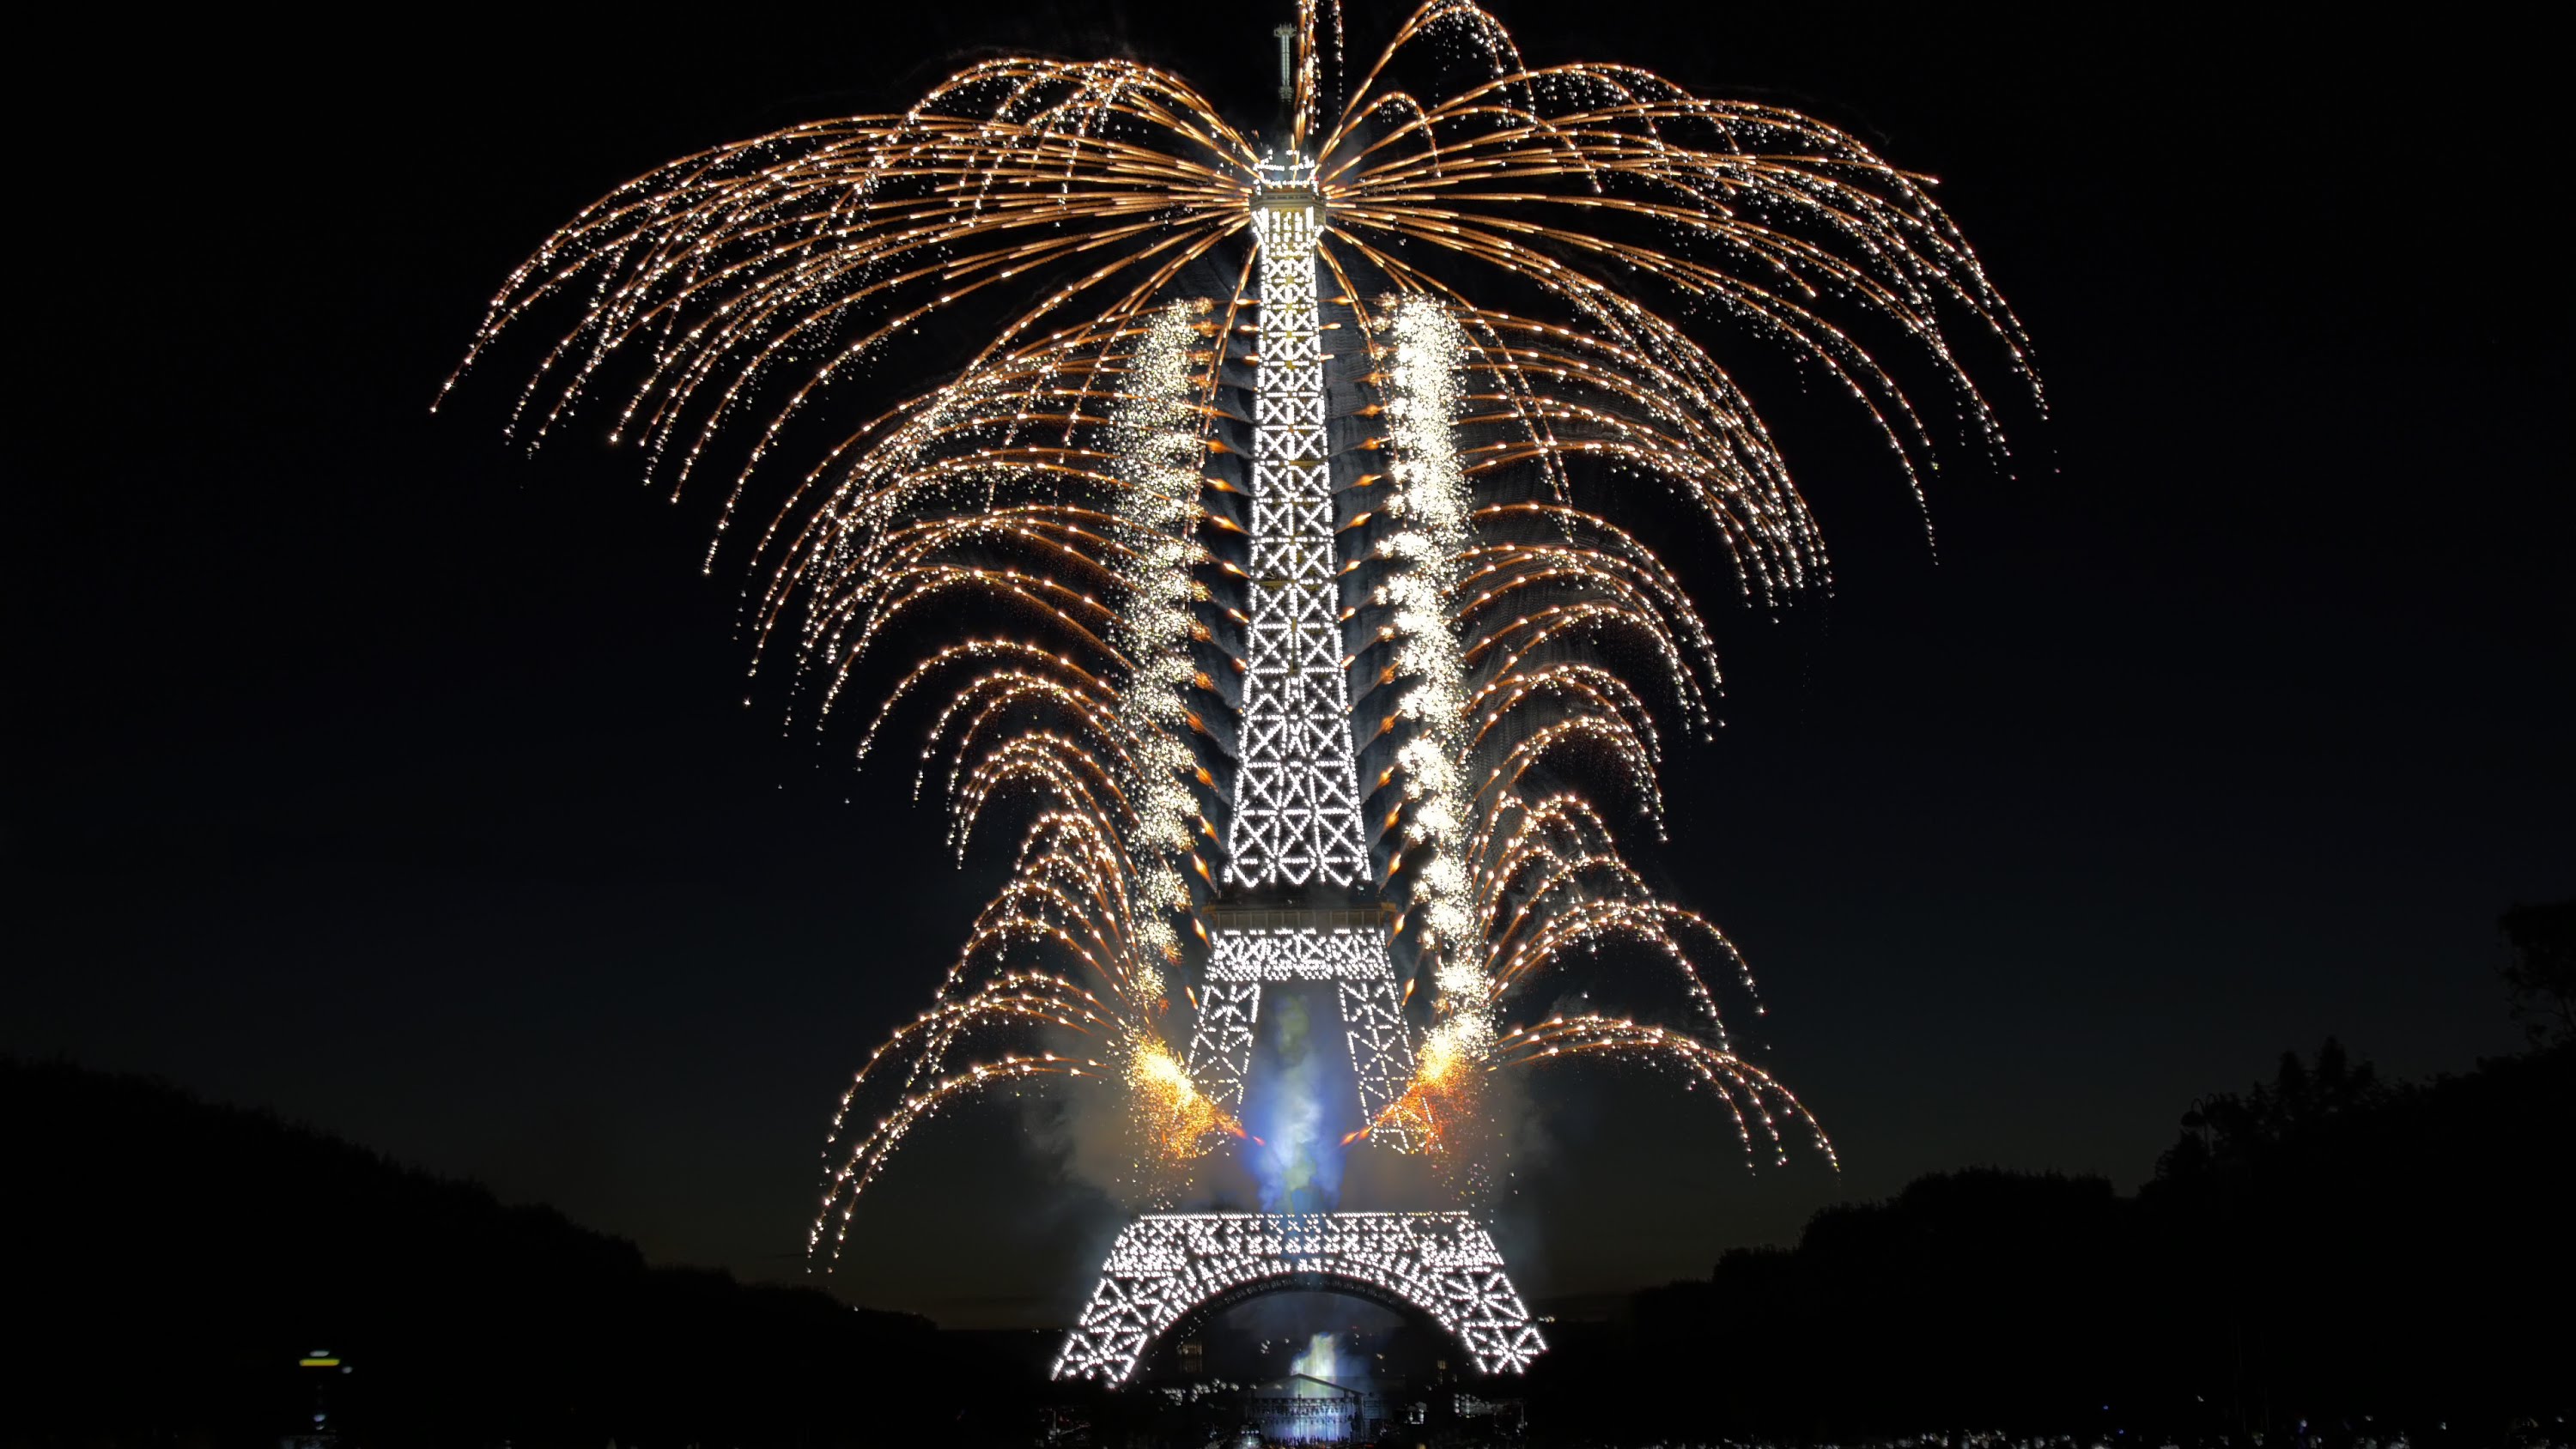  Eiffel Tower Cellphone FHD pic